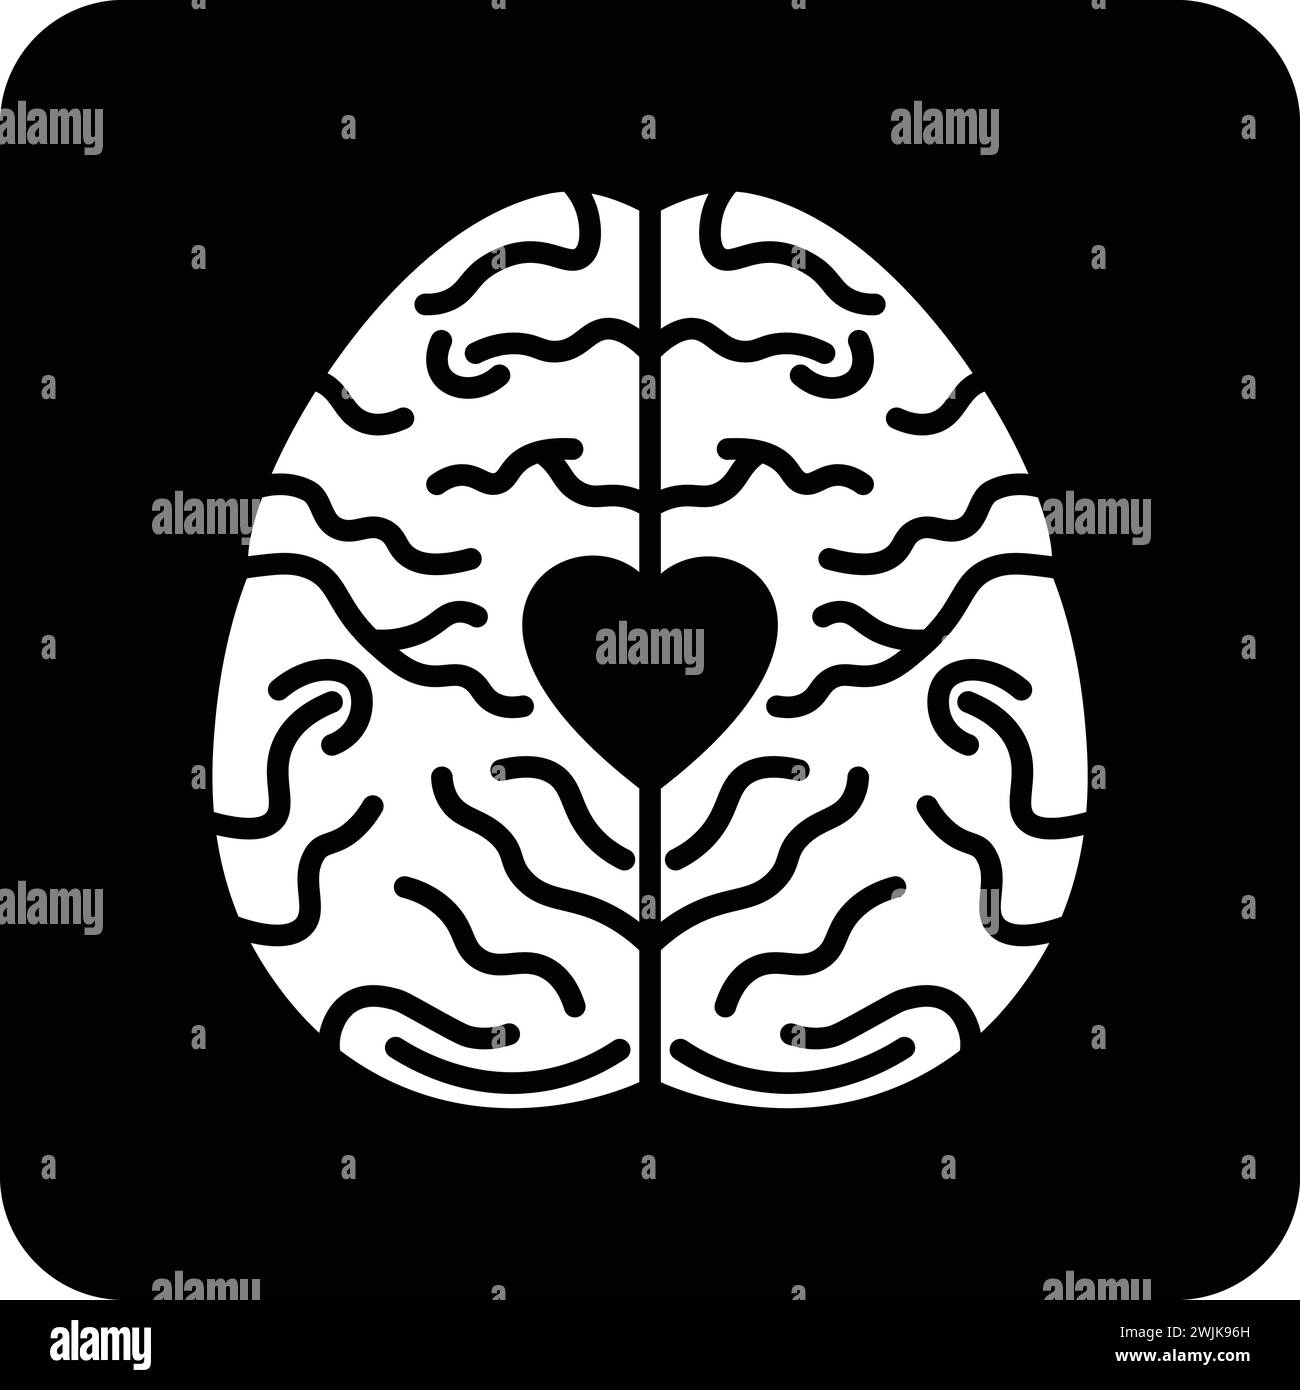 Icône de santé mentale illustration vectorielle plate noire et blanche Illustration de Vecteur